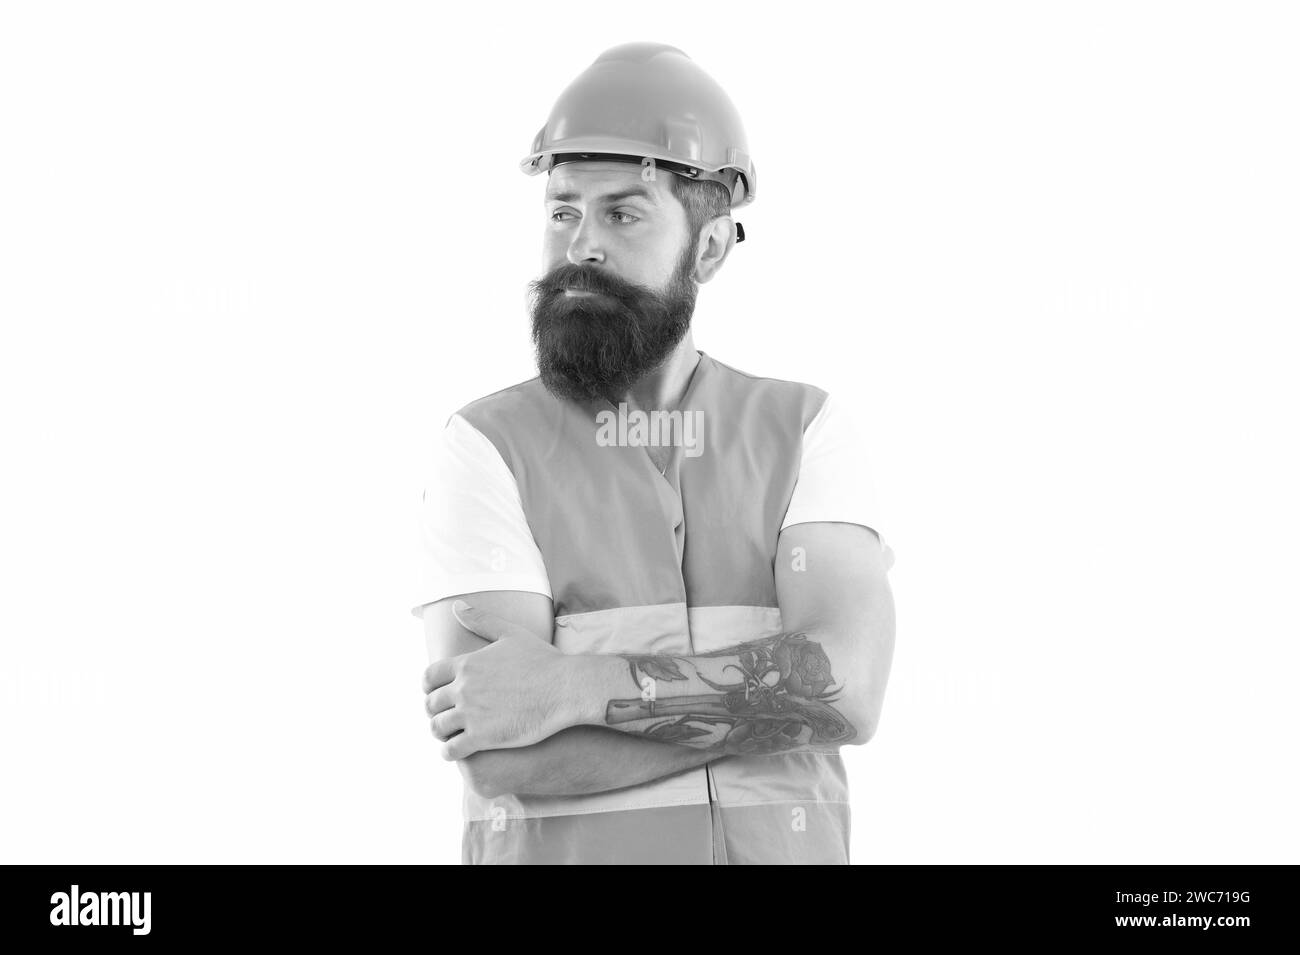 wondered bearded supervisor man in orange vest. studio shot of supervisor man wearing helmet. Stock Photo